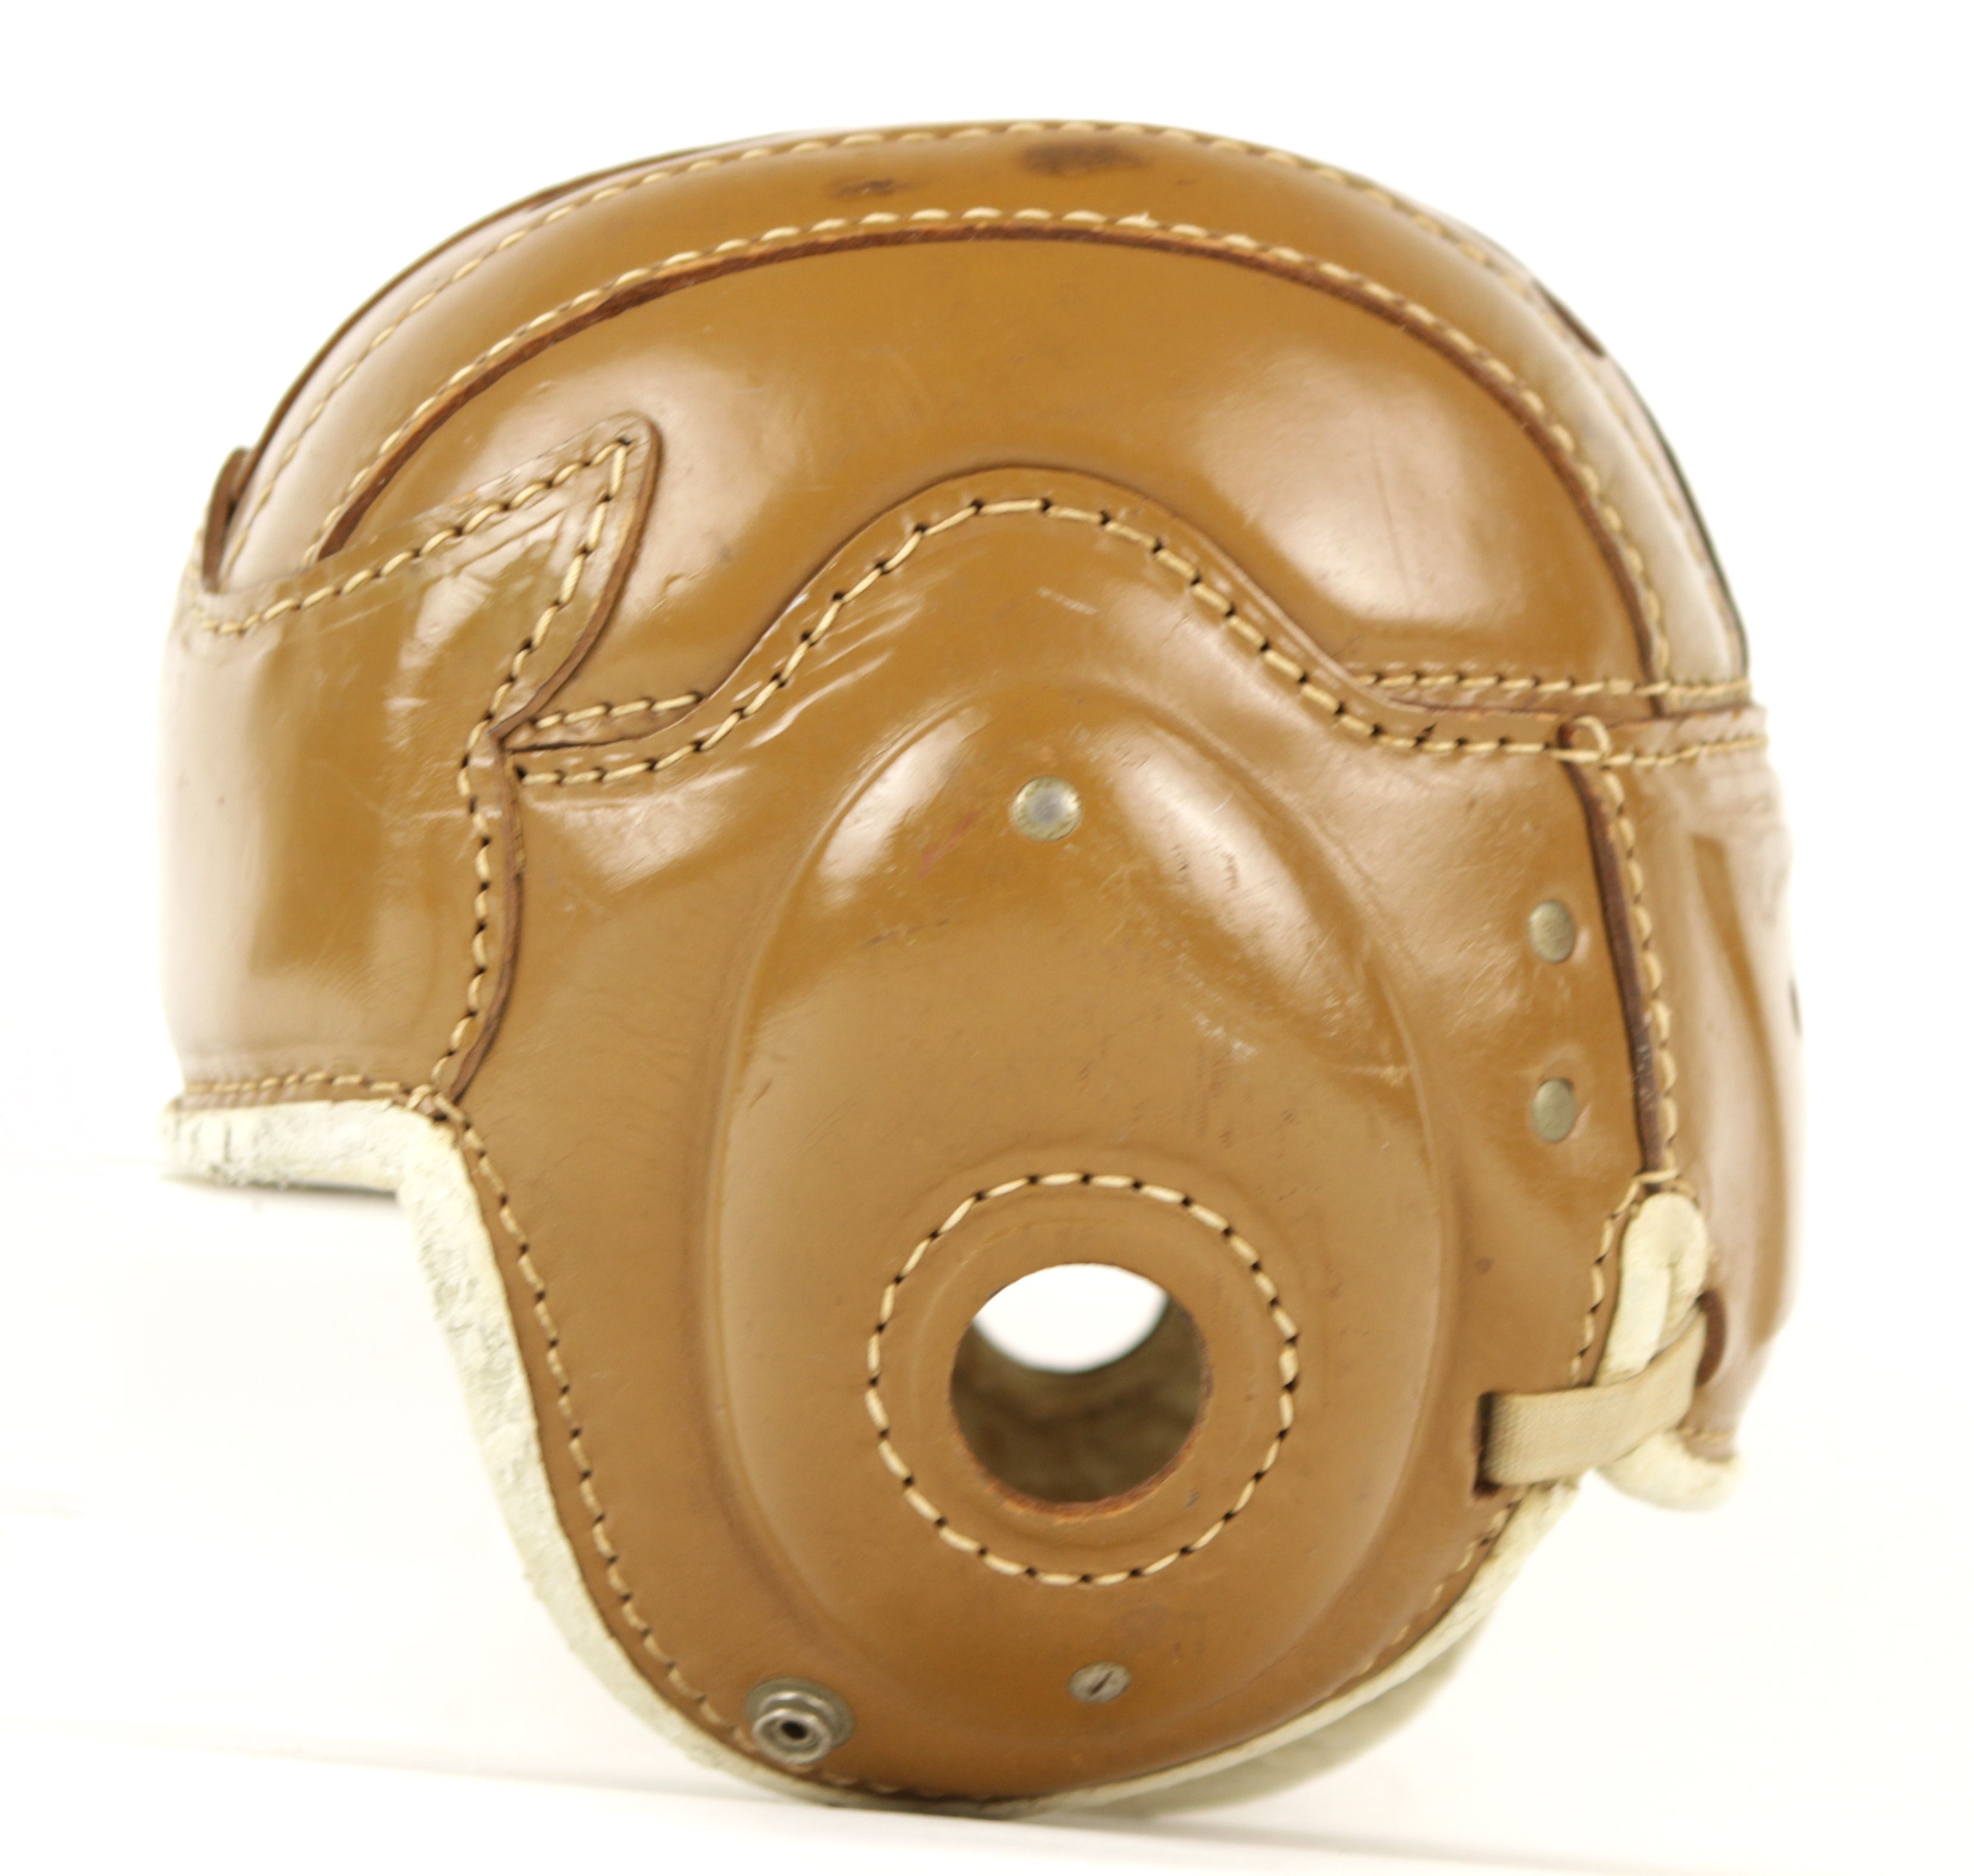 Vintage Leather Football Helmet 44